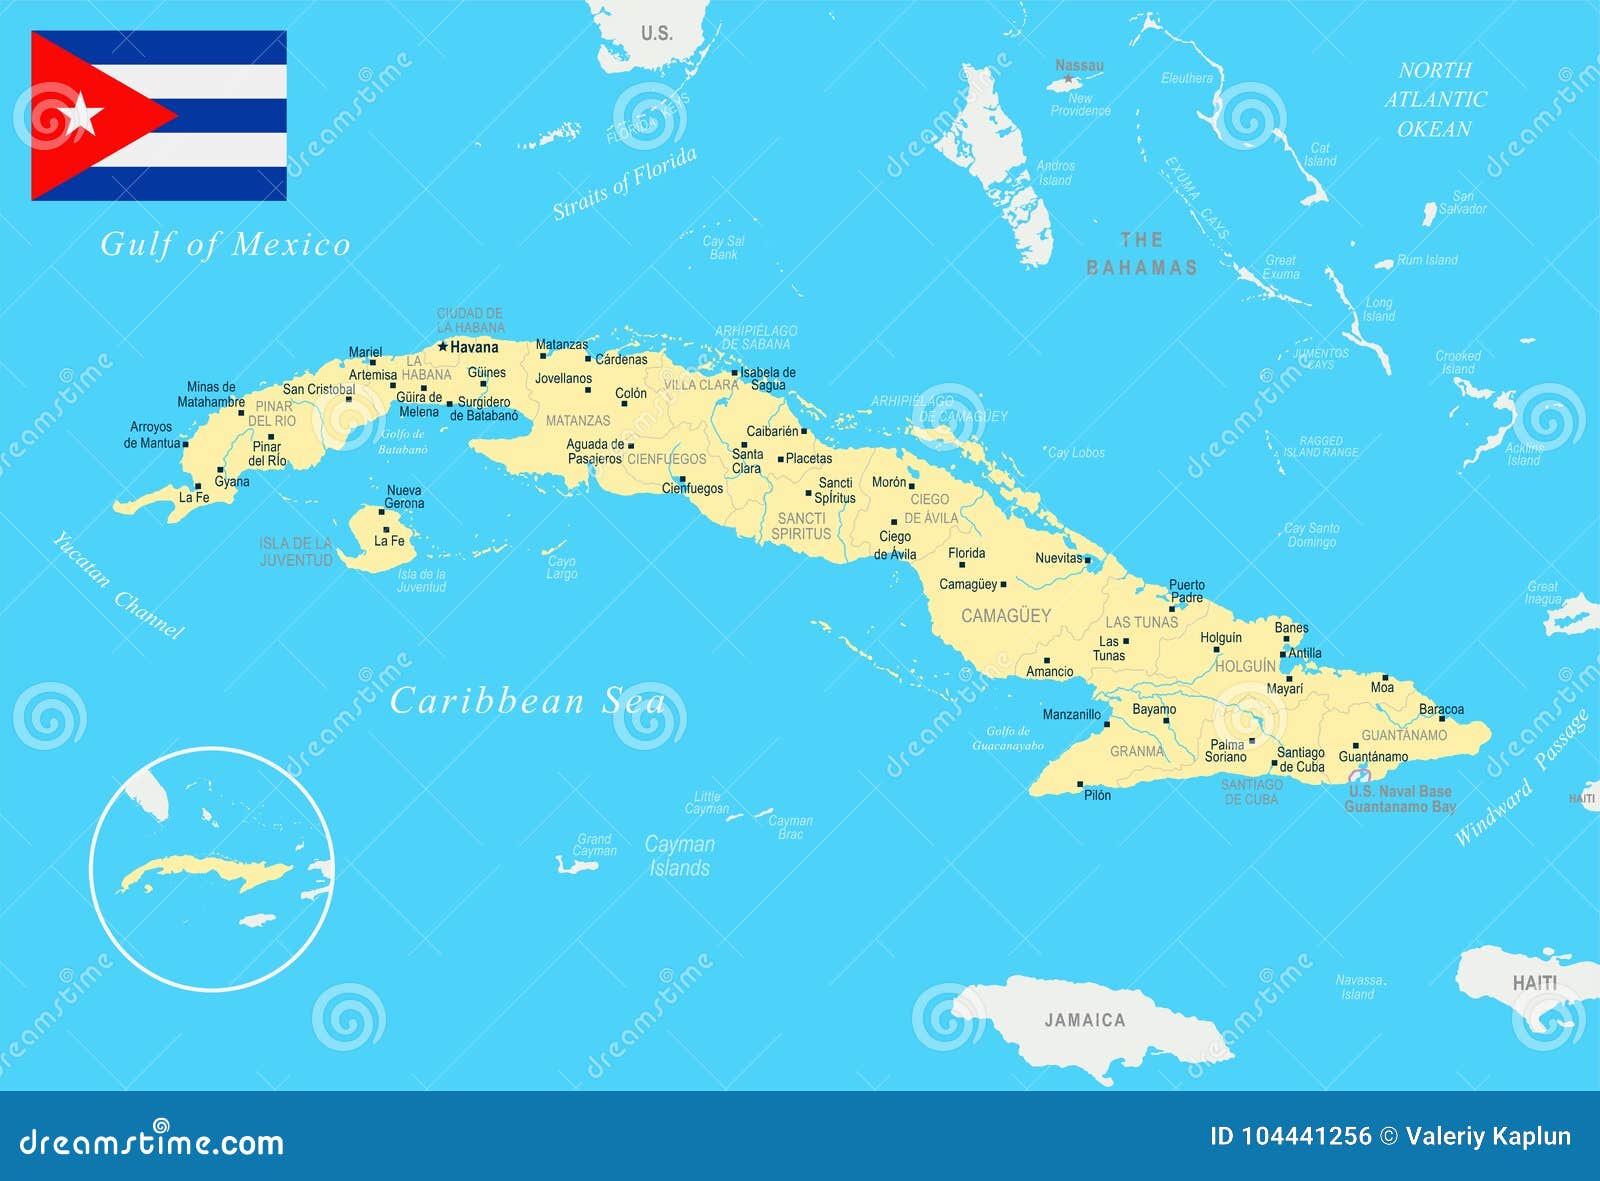 Столица кубы на карте. Куба и Флорида на карте. Подробная карта Кубы. Достопримечательности Кубы на карте. Туристическая карта Кубы.